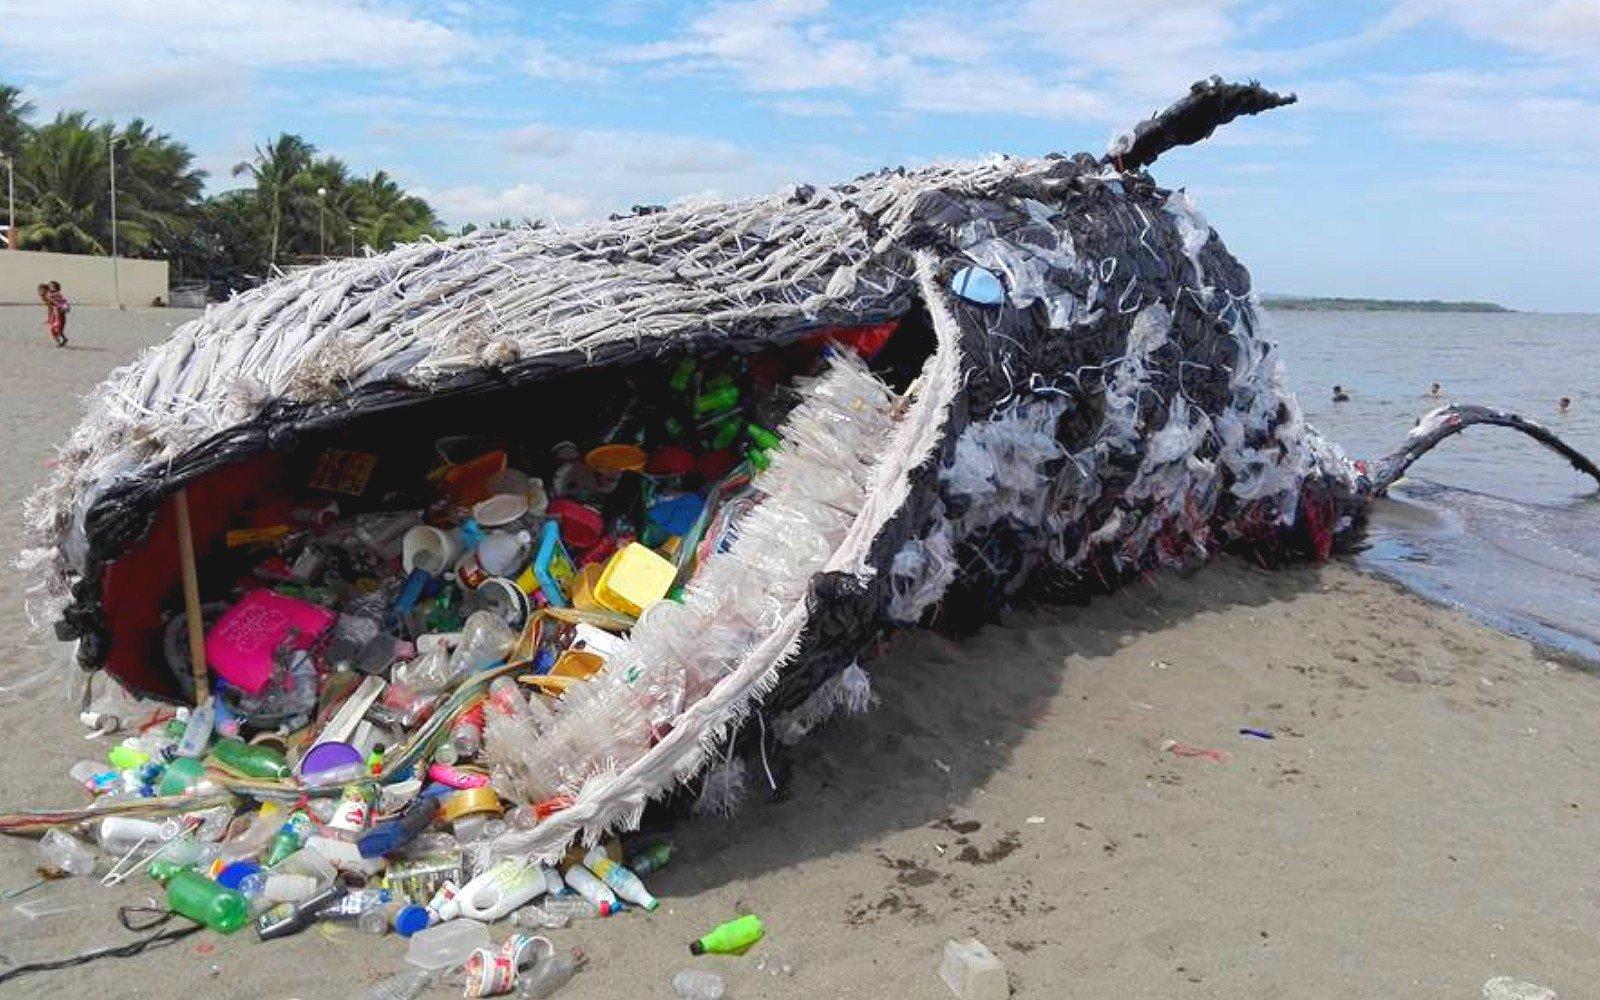 La balena morta con 40 chili di plastica nello stomaco